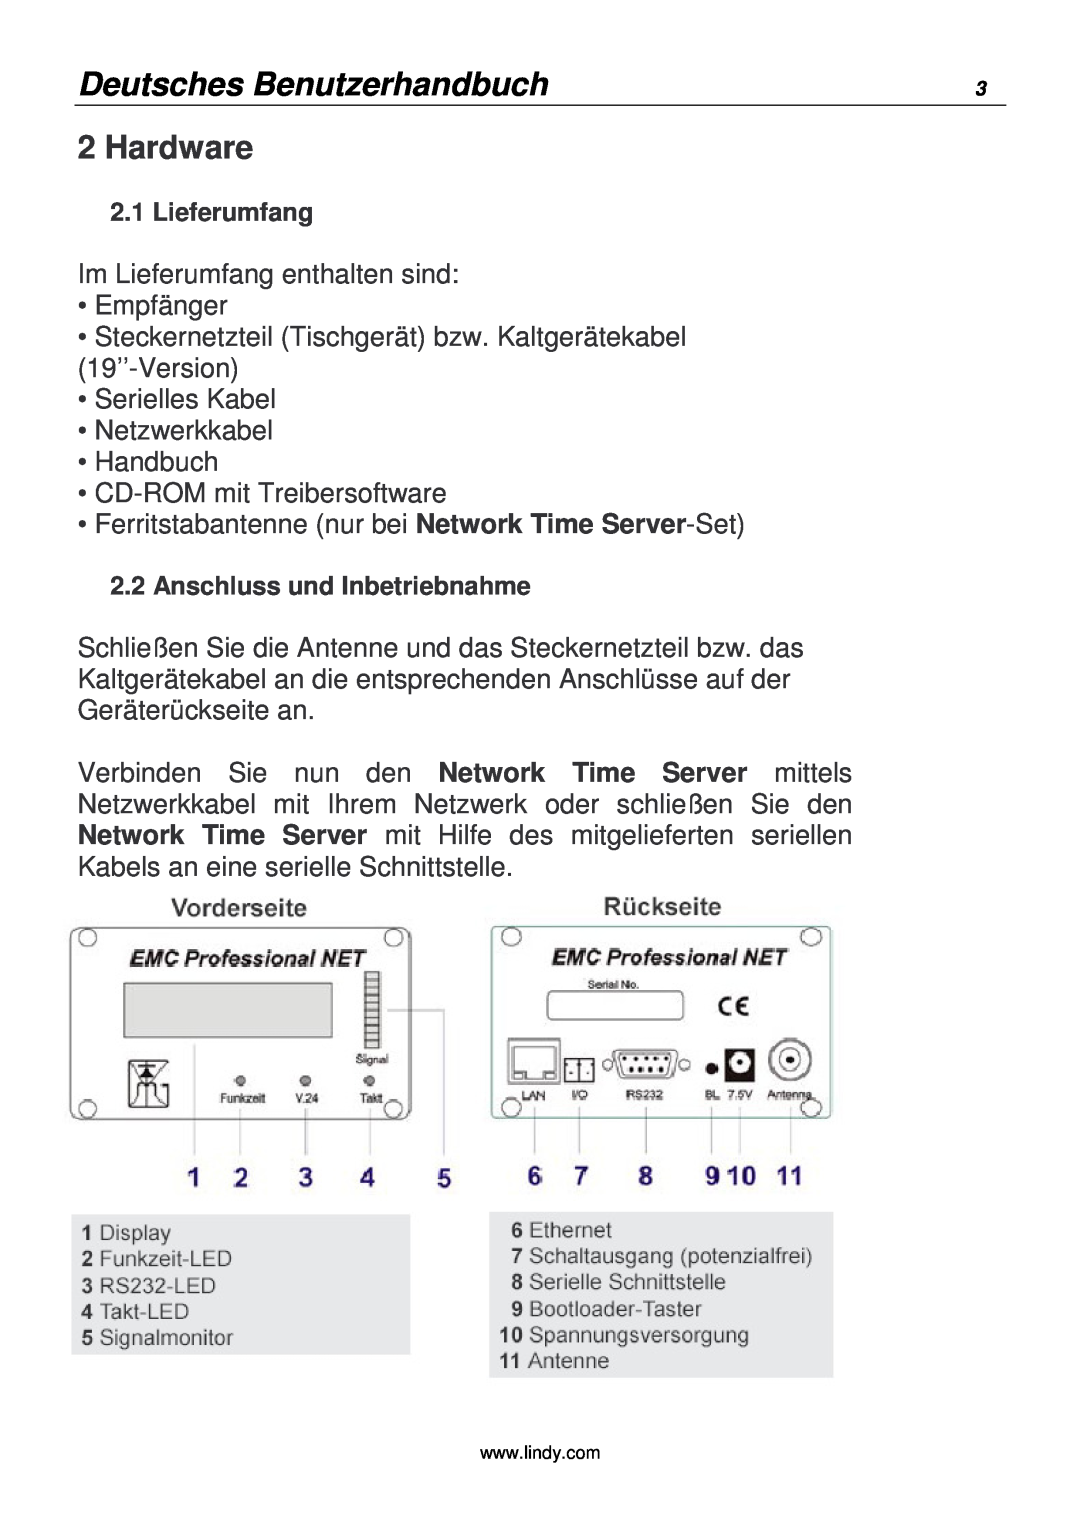 Lindy 20988 manual Deutsches Benutzerhandbuch, Hardware 